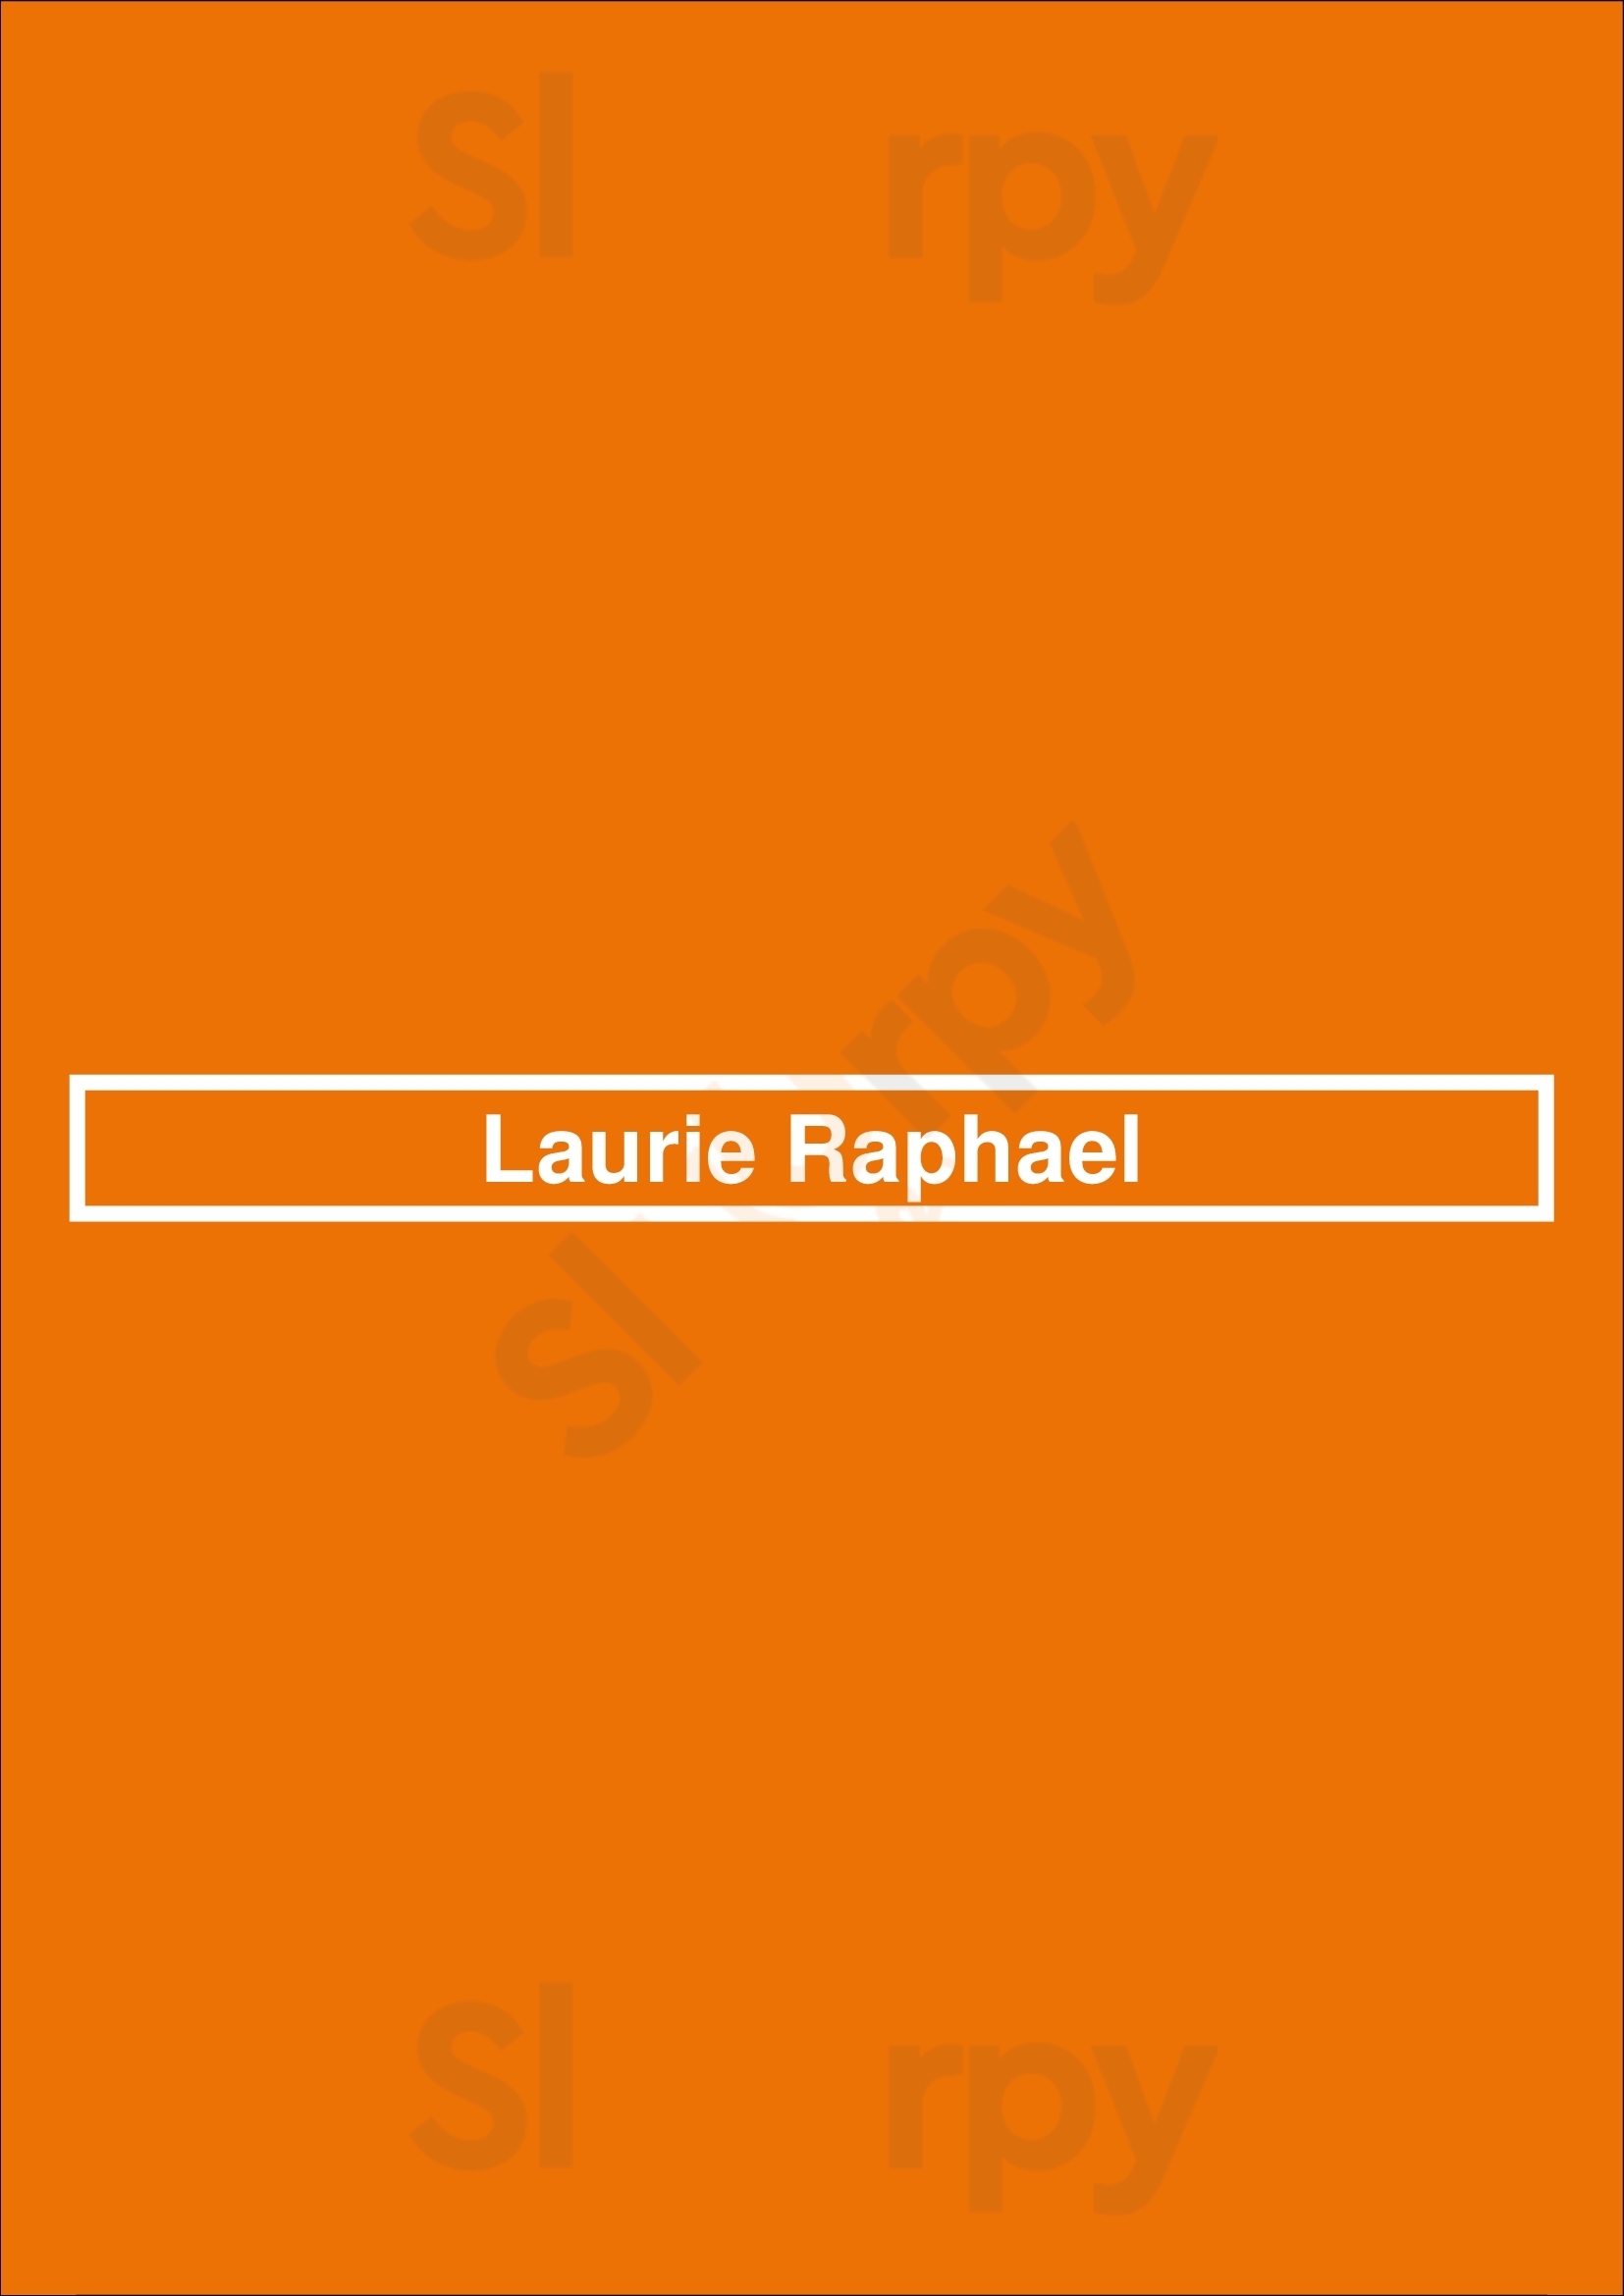 Laurie Raphael Quebec City Menu - 1